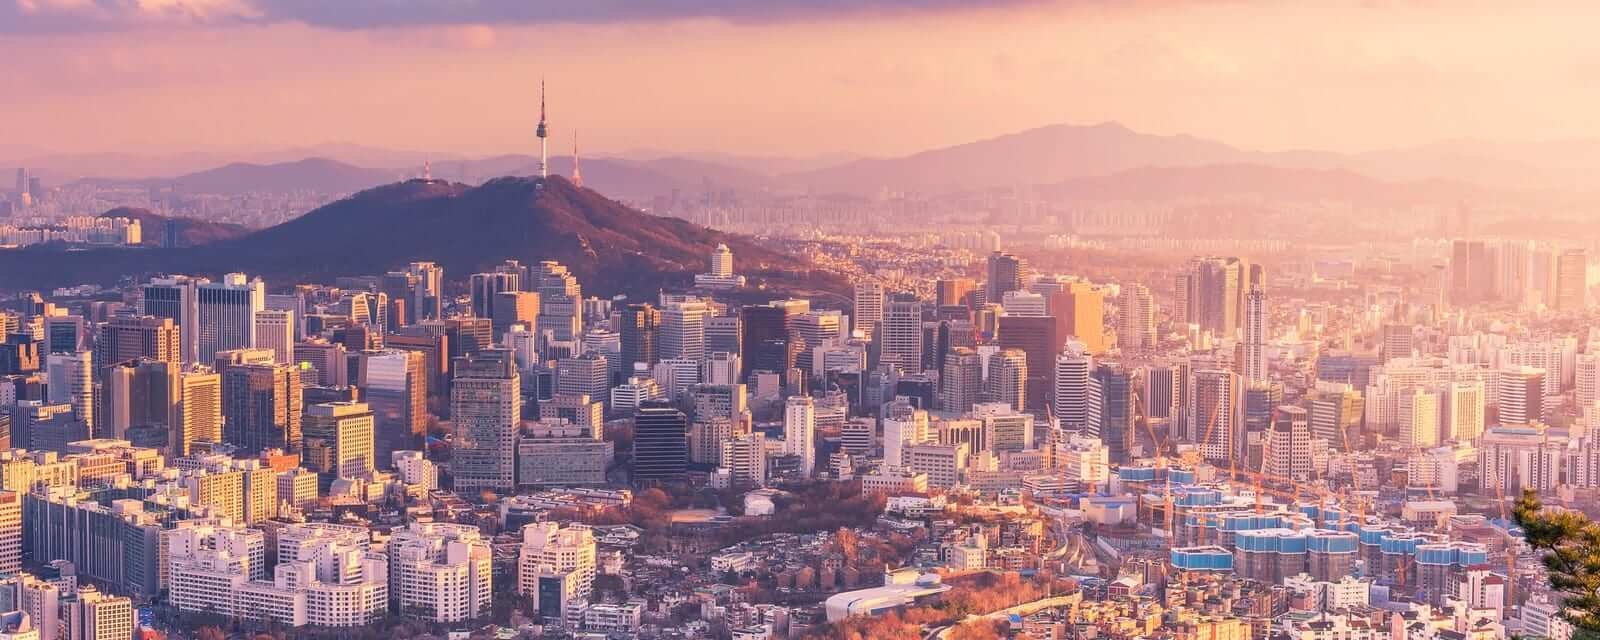 south-korea-cityscape